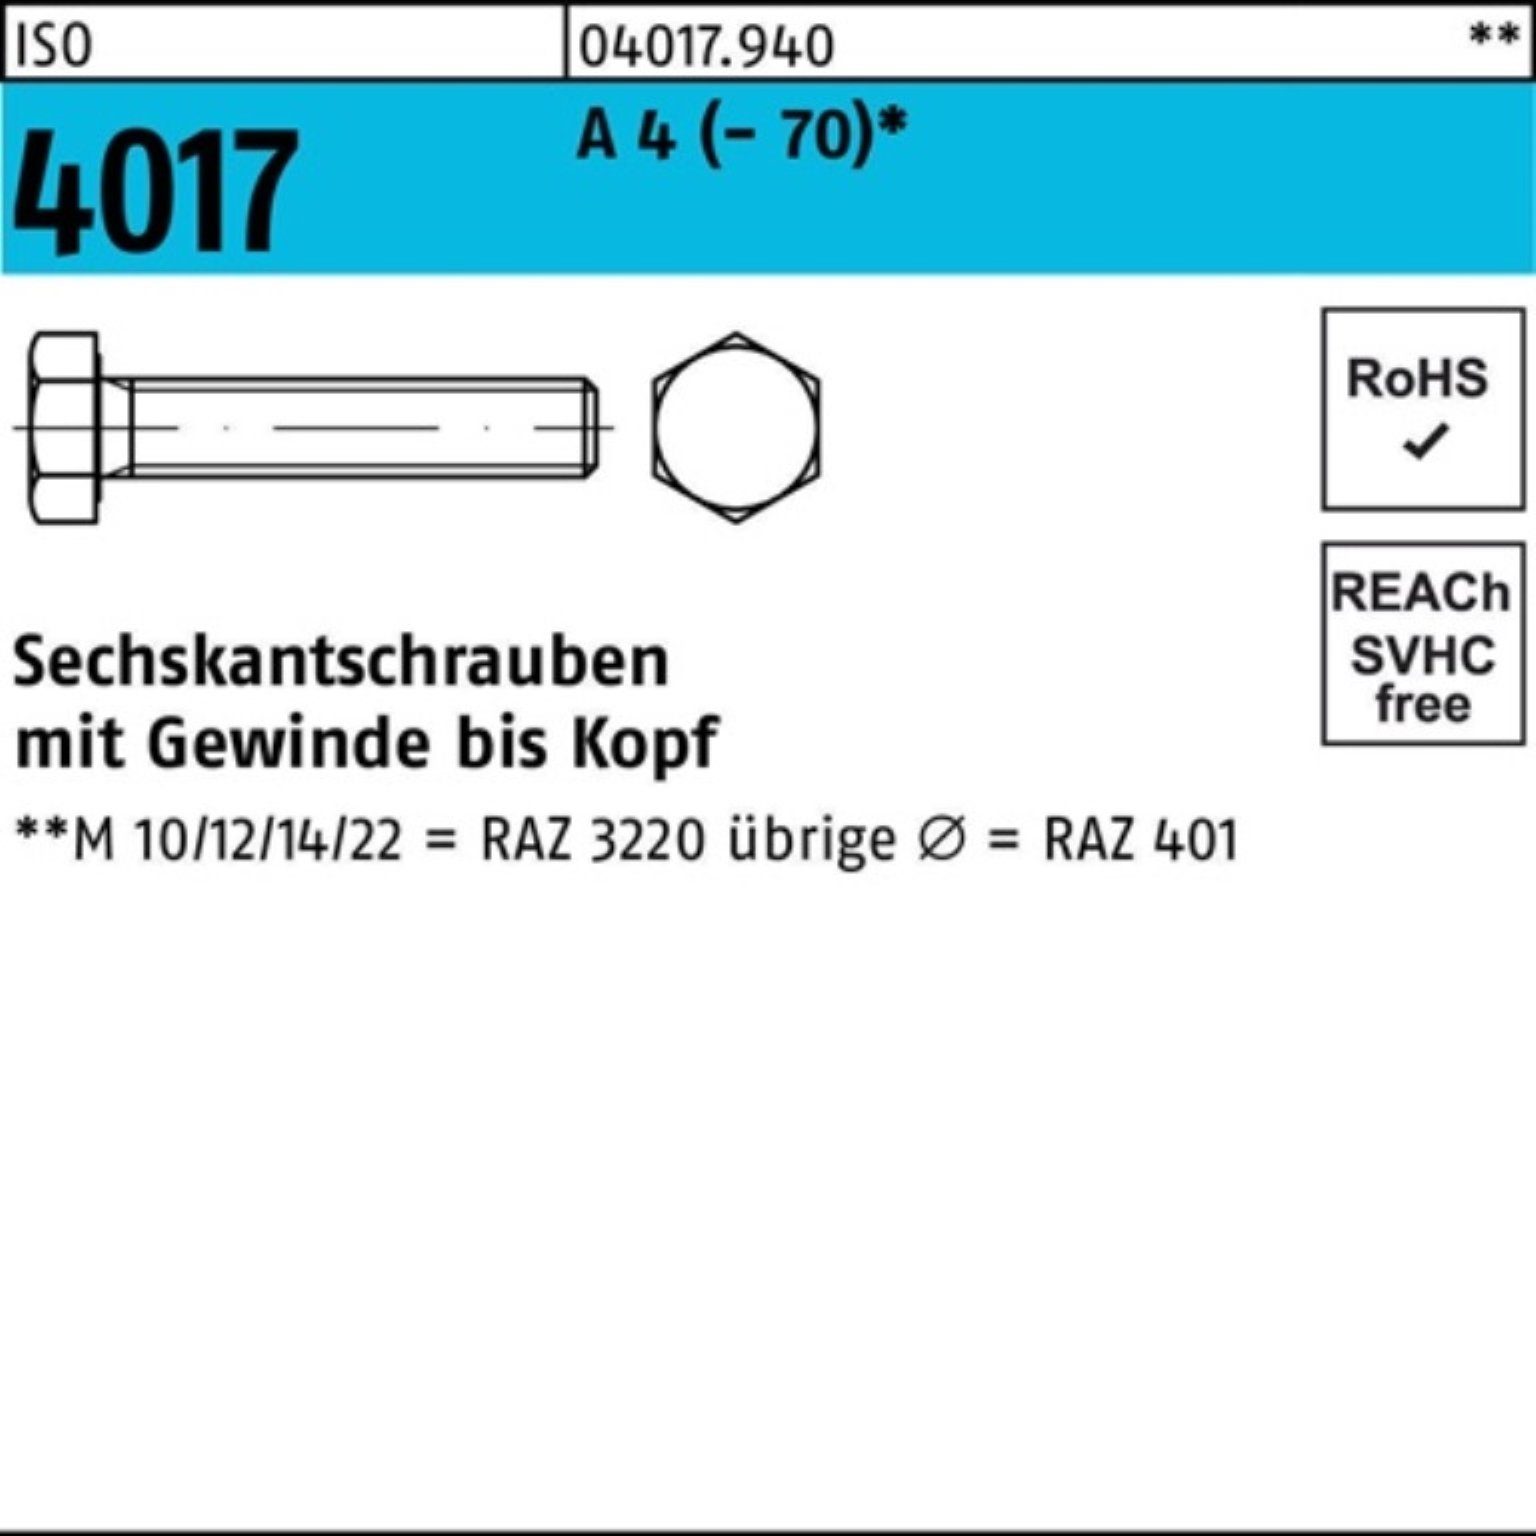 Bufab Sechskantschraube 100er Pack Sechskantschraube ISO 4017 VG M10x 100 A 4 (70) 50 Stück | Schrauben